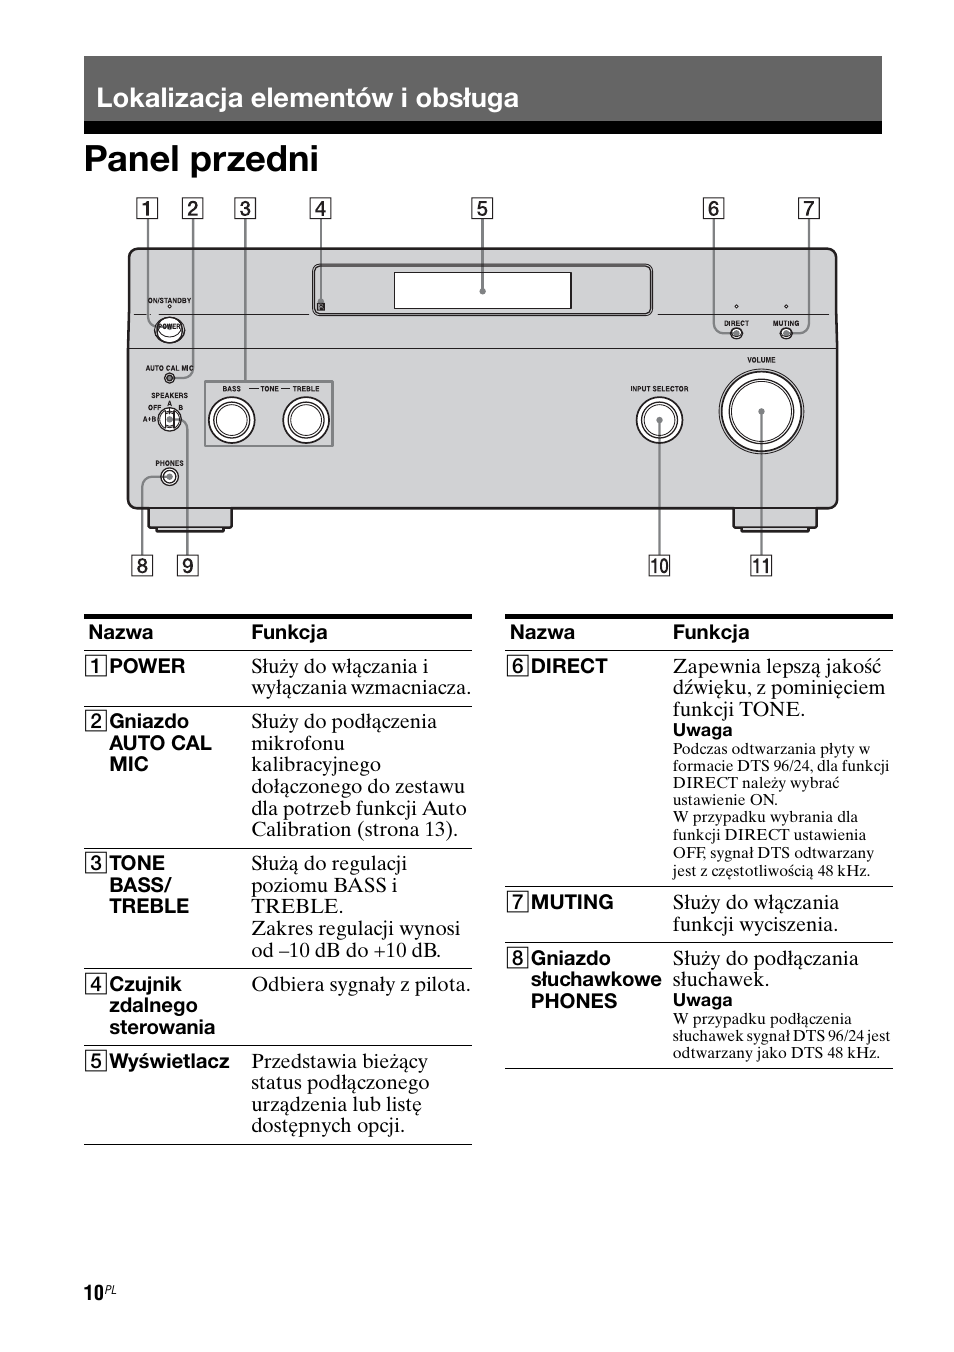 Lokalizacja elementów i obsługa, Panel przedni | Sony TA-FA1200ES User Manual | Page 76 / 91